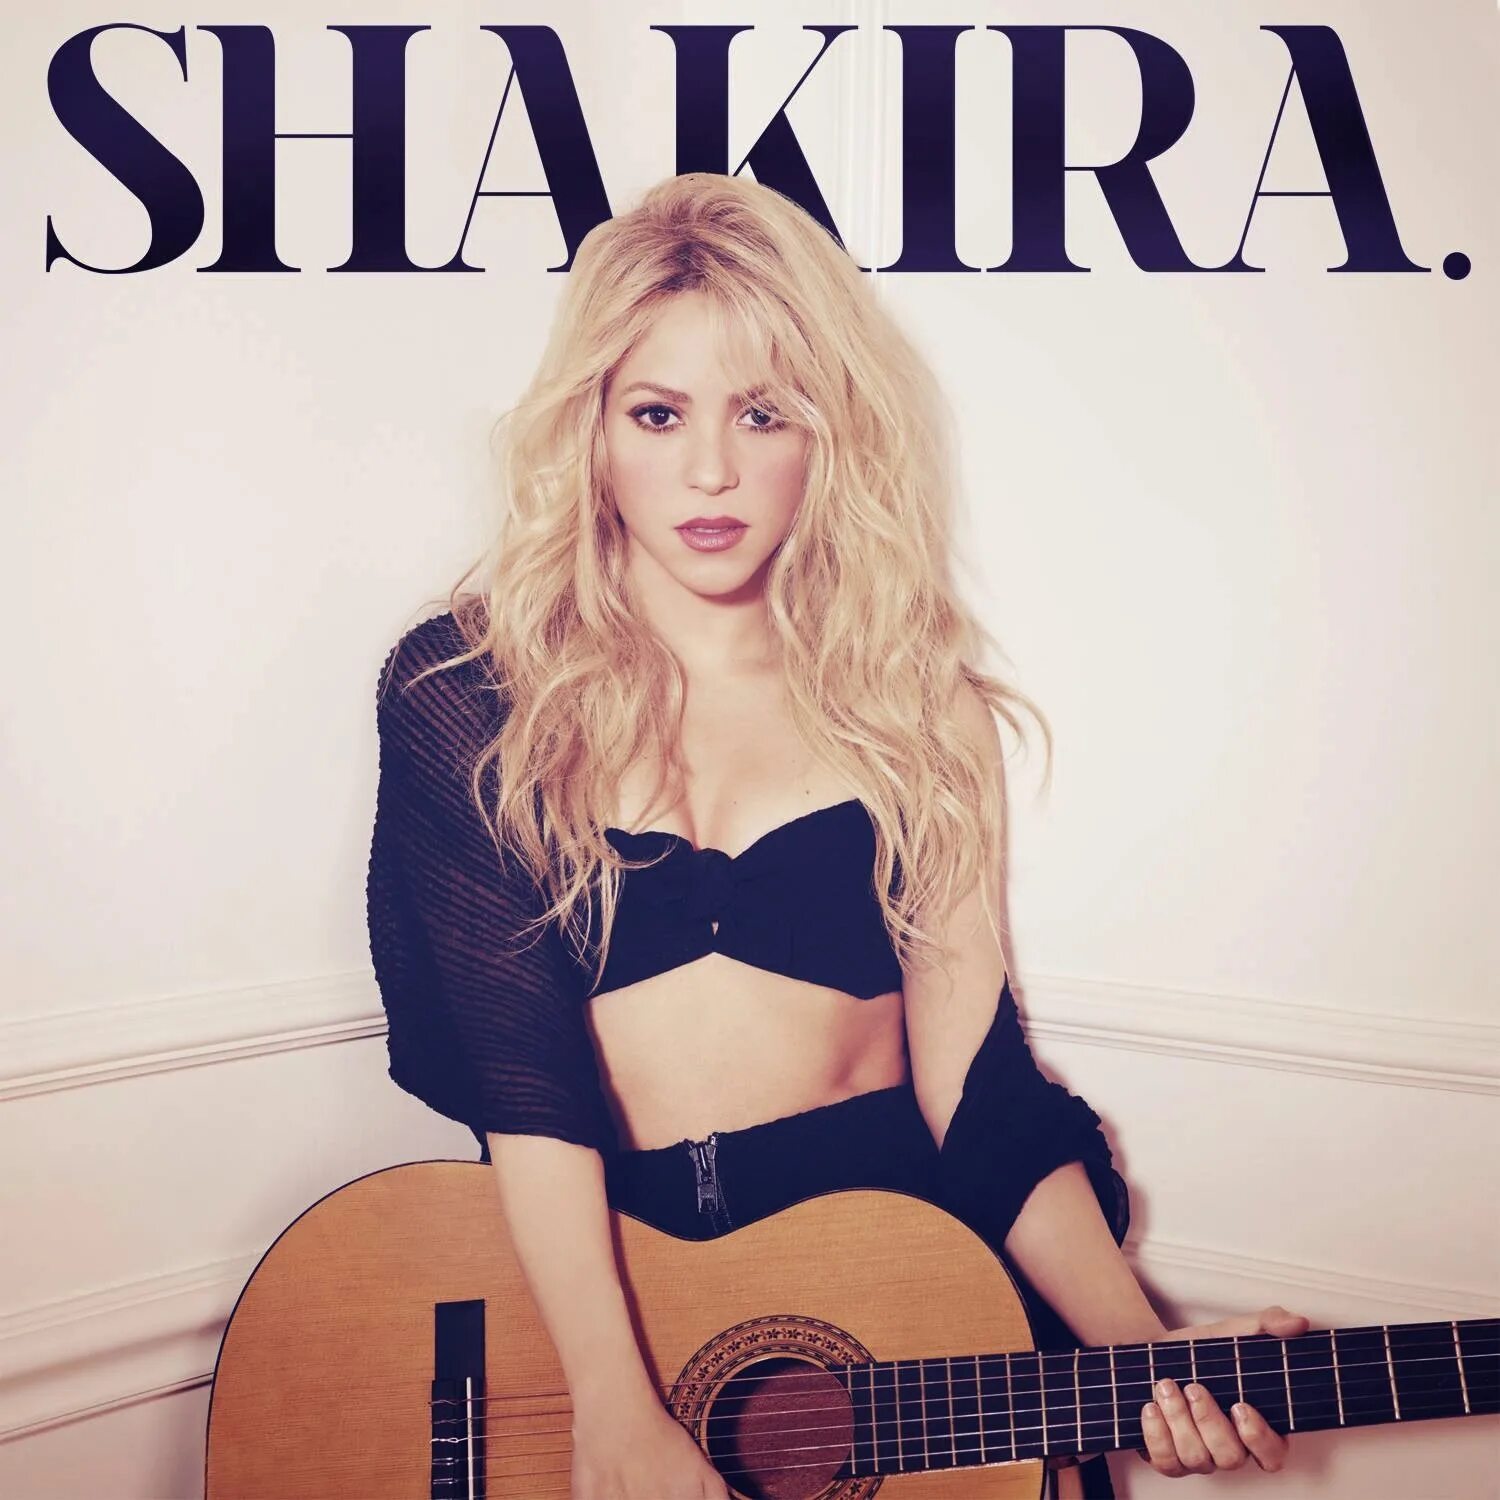 Shakira album. Shakira CD. Shakira 2014 album. Shakira обложки альбомов.